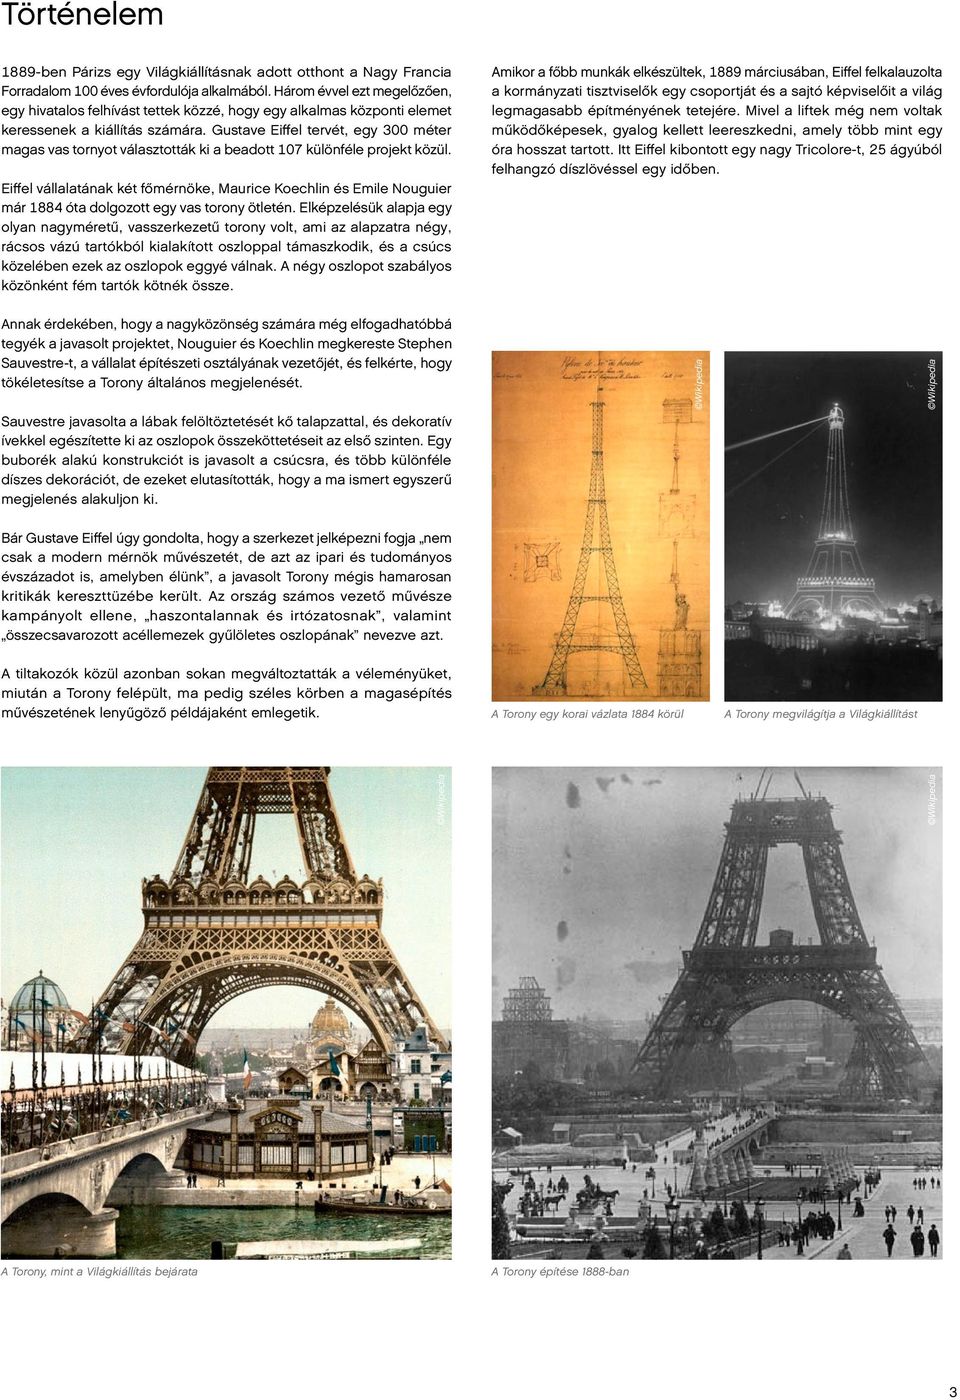 Gustave Eiffel tervét, egy 300 méter magas vas tornyot választották ki a beadott 107 különféle projekt közül.